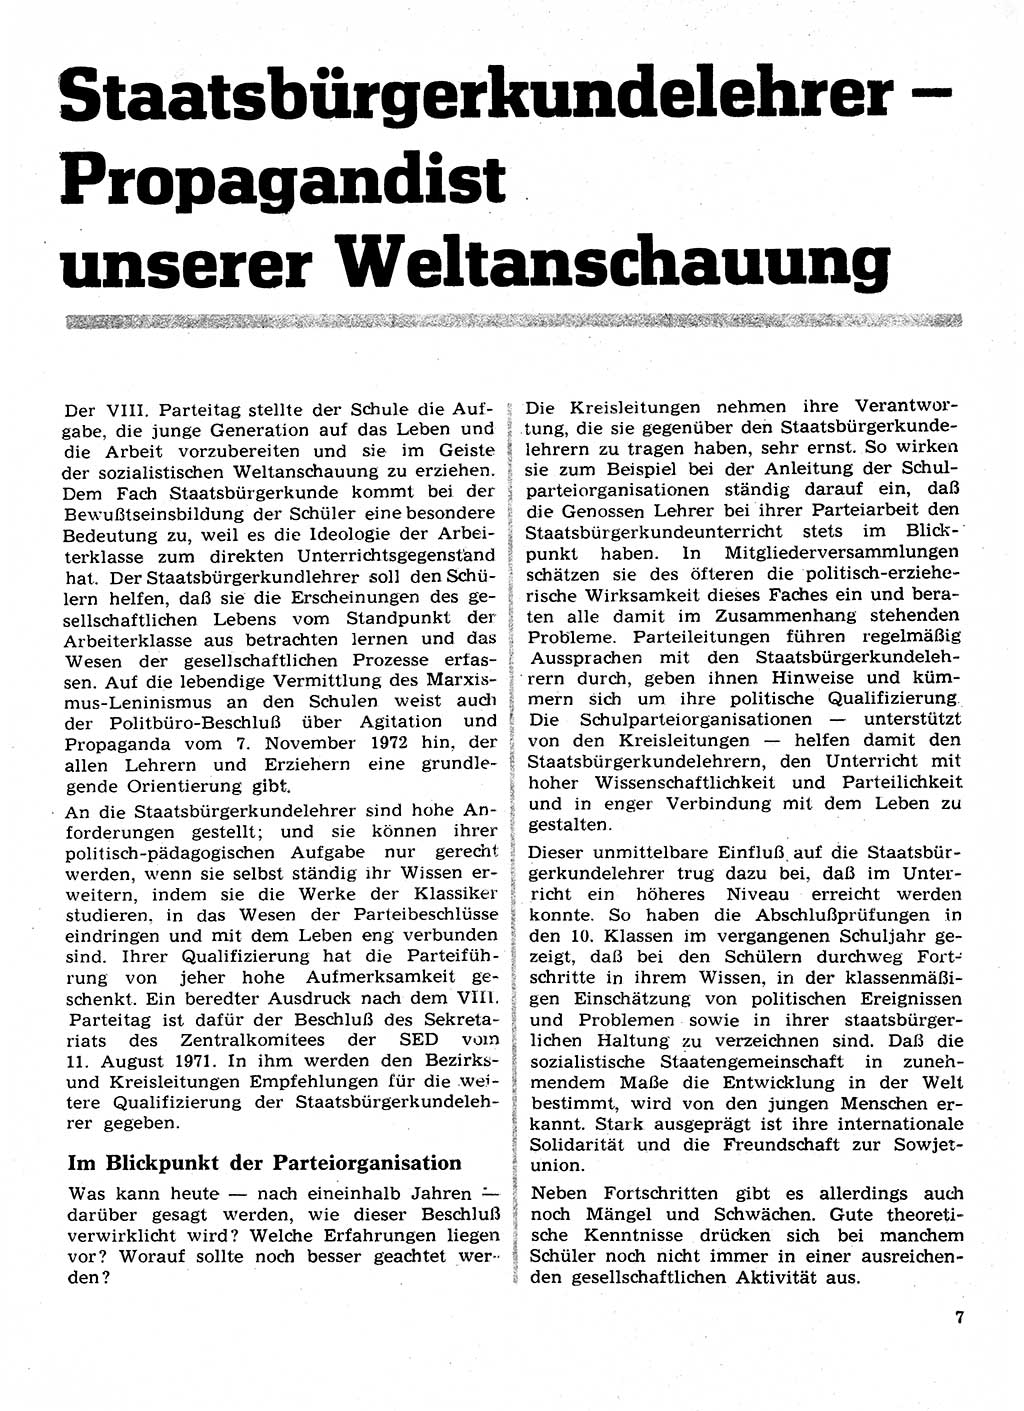 Neuer Weg (NW), Organ des Zentralkomitees (ZK) der SED (Sozialistische Einheitspartei Deutschlands) für Fragen des Parteilebens, 28. Jahrgang [Deutsche Demokratische Republik (DDR)] 1973, Seite 7 (NW ZK SED DDR 1973, S. 7)